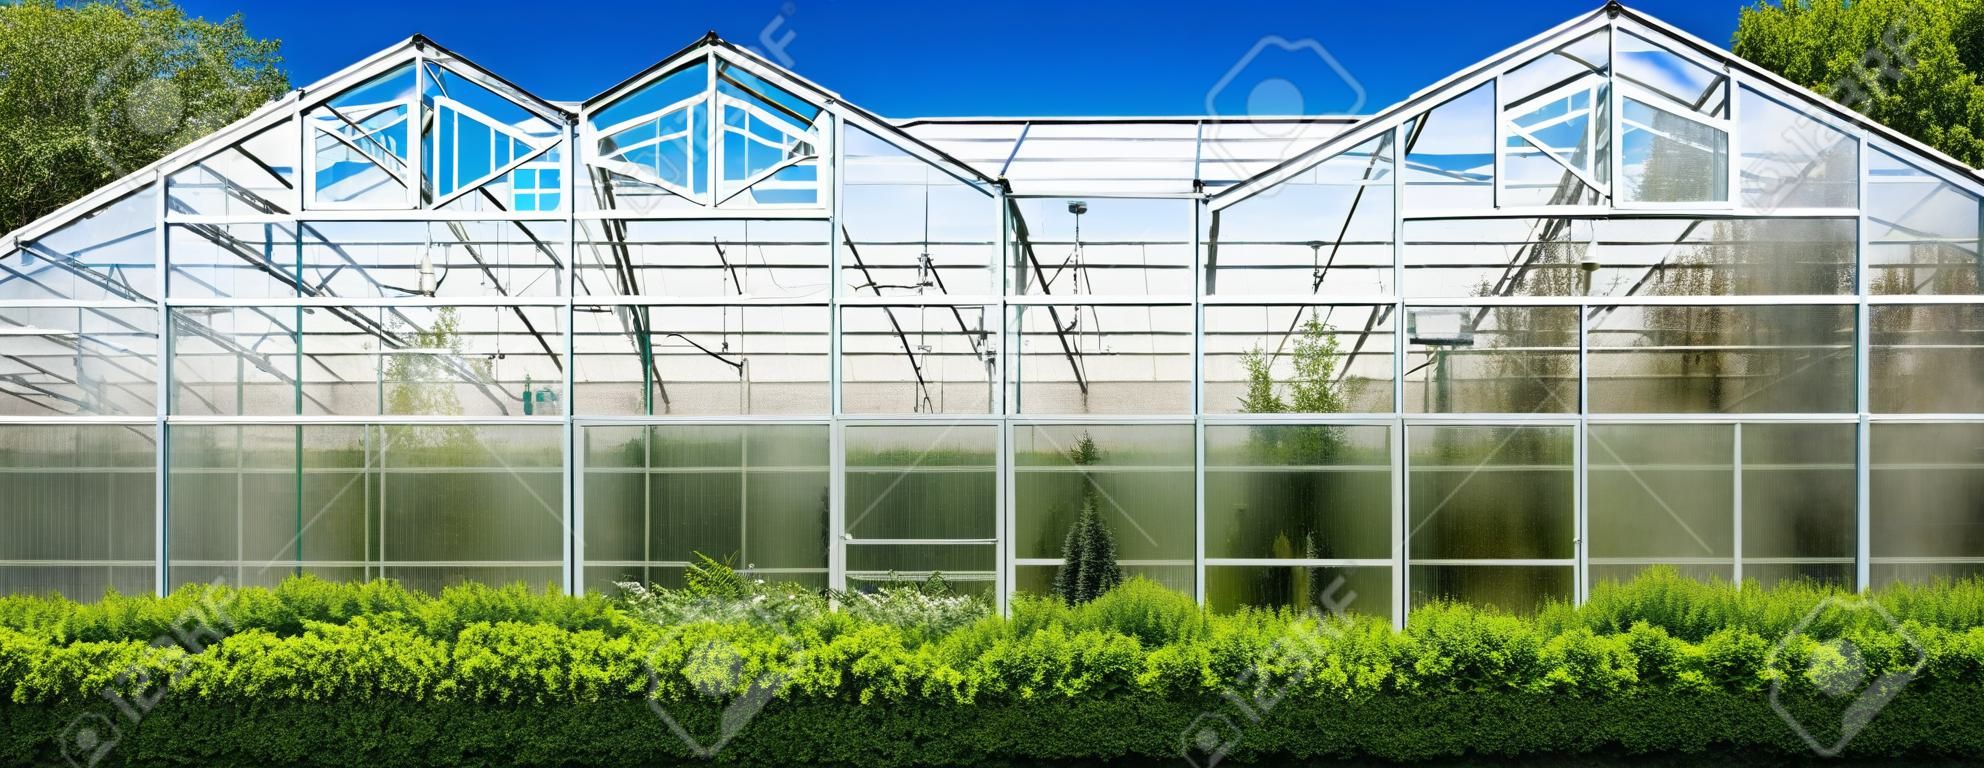 landbouwgebouw gevel gemaakt van glazen kas voor het kweken van groenten het hele jaar door op een zonnige dag met groene groenblijvende struiken en blauwe lucht.